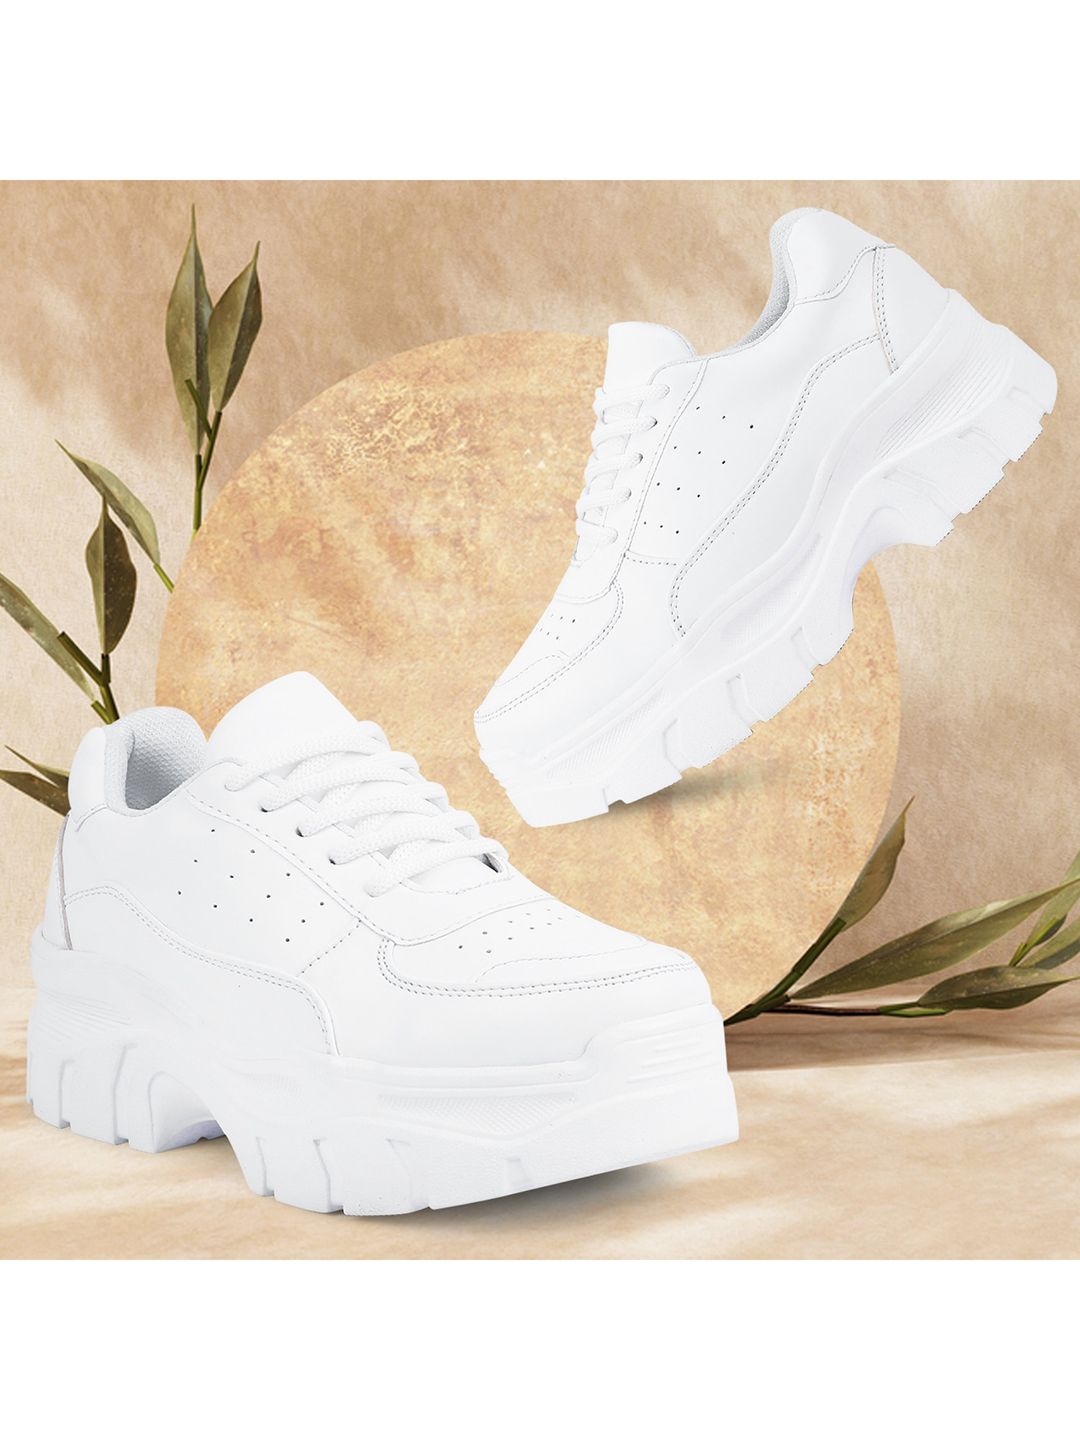 VENDOZ Women White Solid Sneakers Price in India